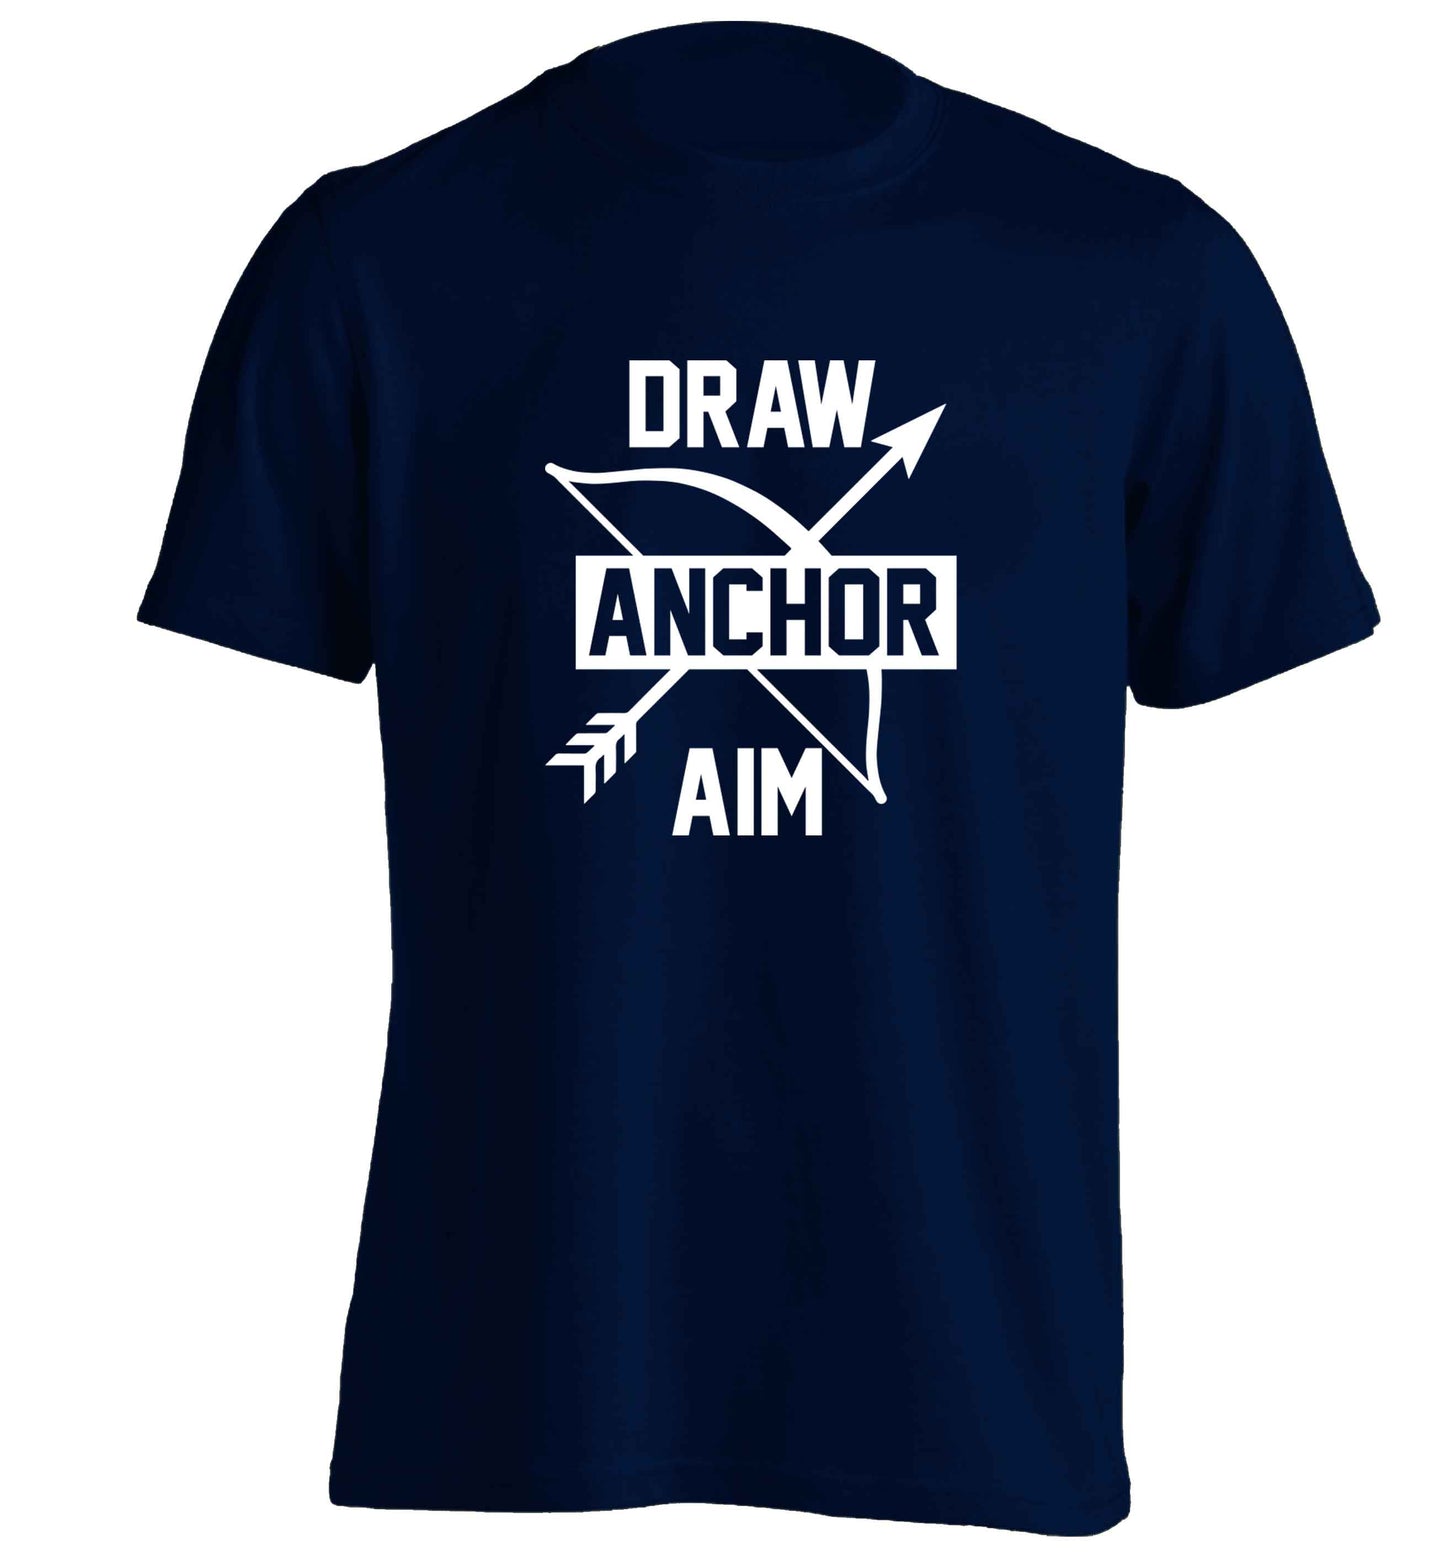 Draw anchor aim adults unisex navy Tshirt 2XL